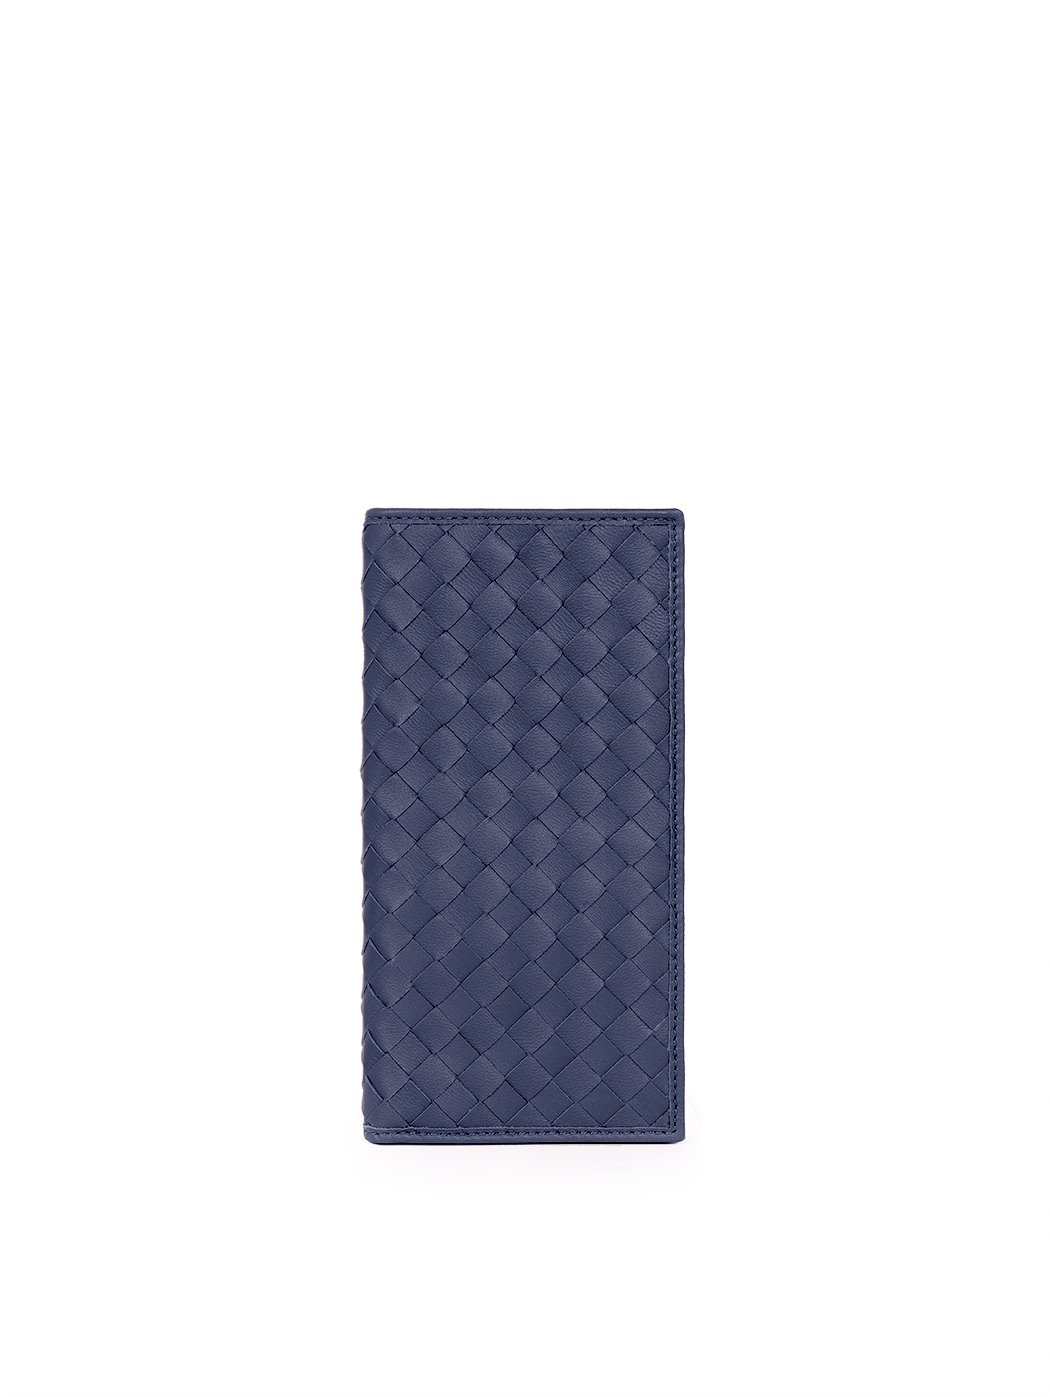 Вертикальный плетеный кошелек коллекции Intrecci синего цвета